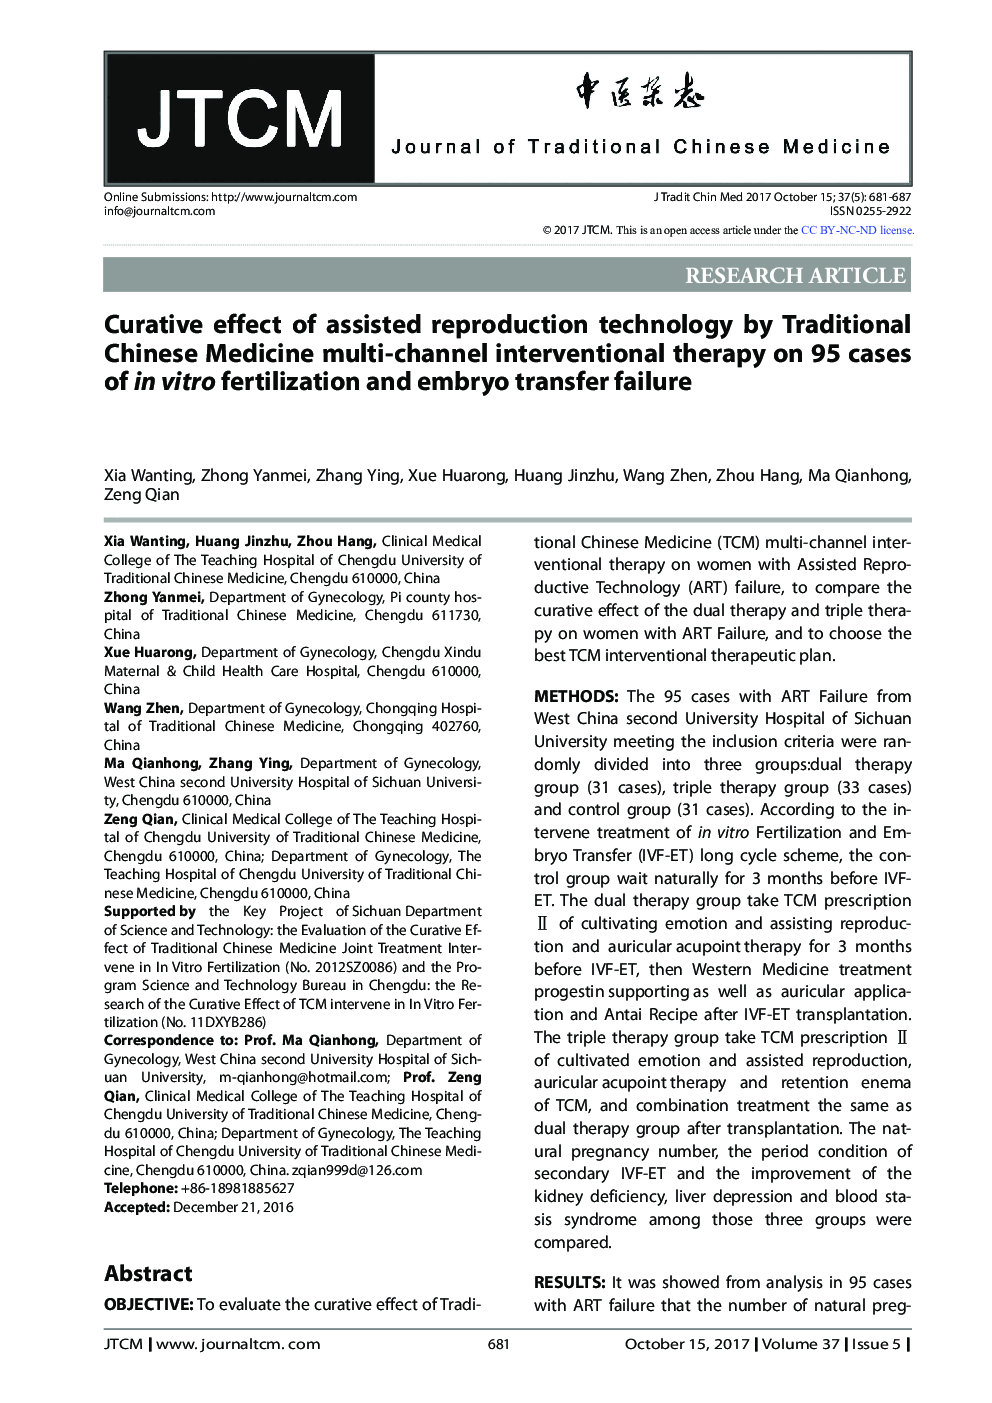 اثر درمانی تکنولوژی تکثیر کمکی توسط درمان مداخله چند کاناله طب سوزنی چینی بر روی 95 مورد از لقاح و انتقال جنین 